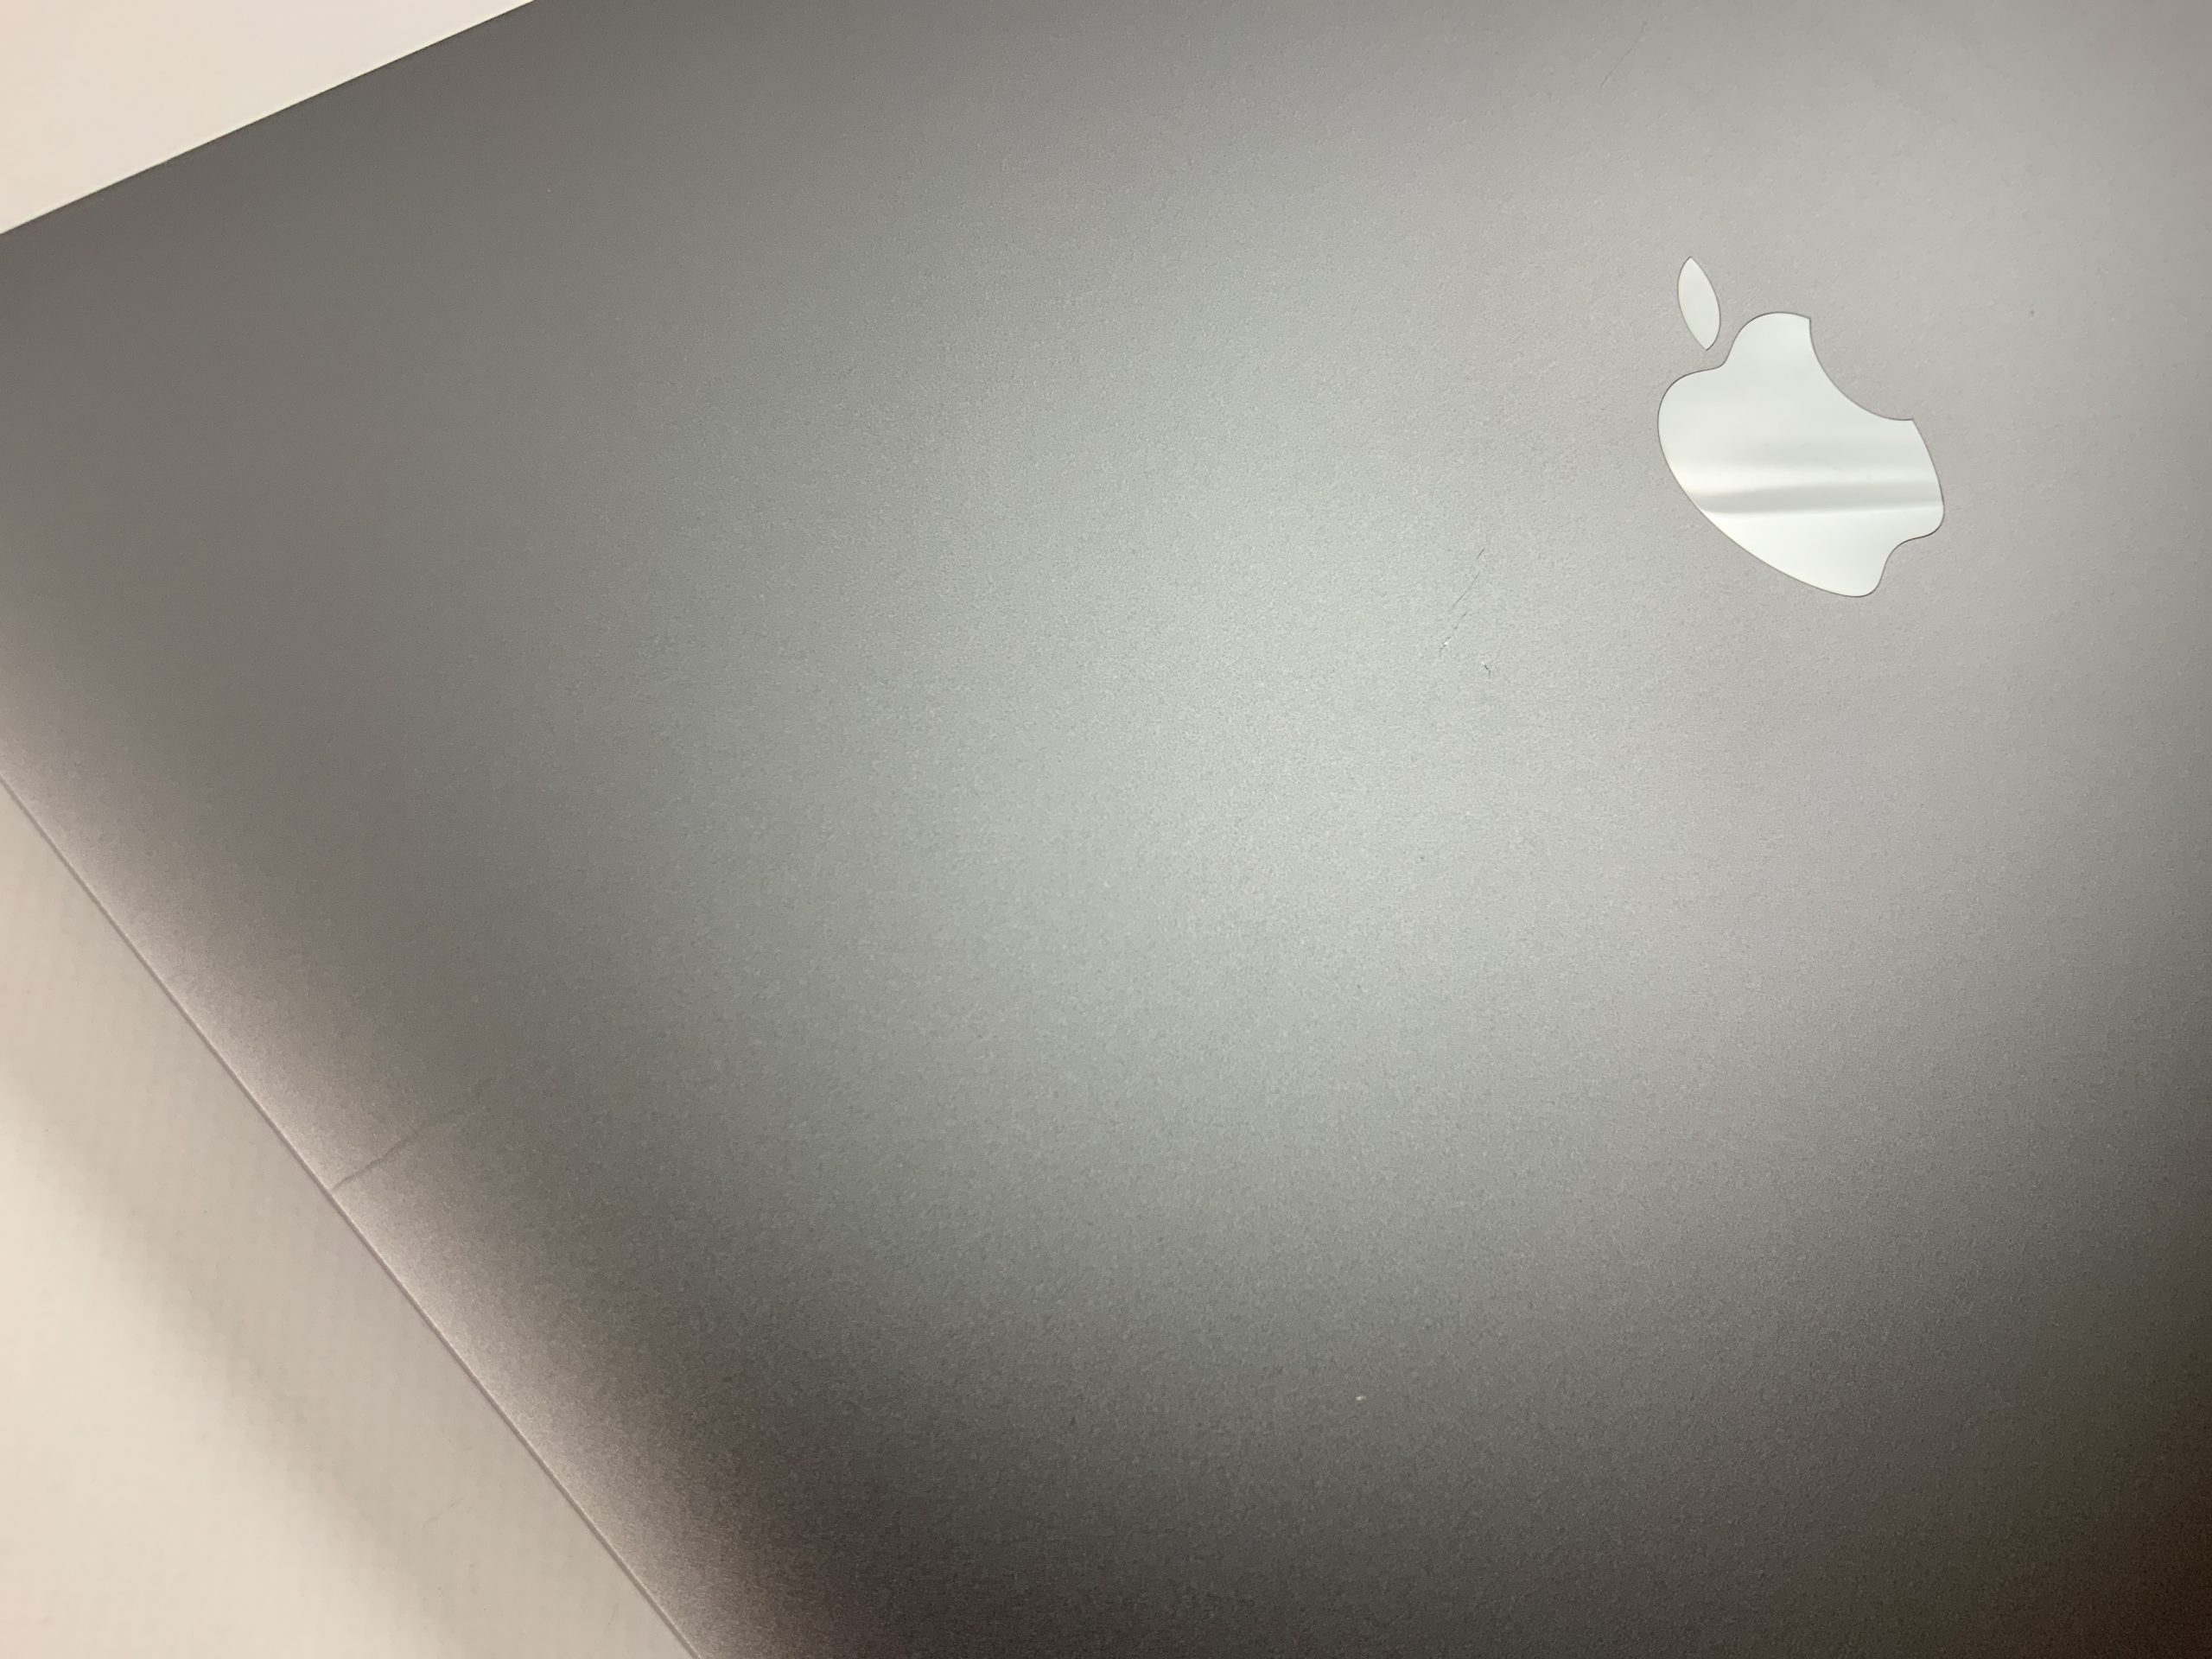 MacBook Pro 13" 4TBT Mid 2019 (Intel Quad-Core i5 2.4 GHz 16 GB RAM 512 GB SSD), Space Gray, Intel Quad-Core i5 2.4 GHz, 16 GB RAM, 512 GB SSD, Bild 2